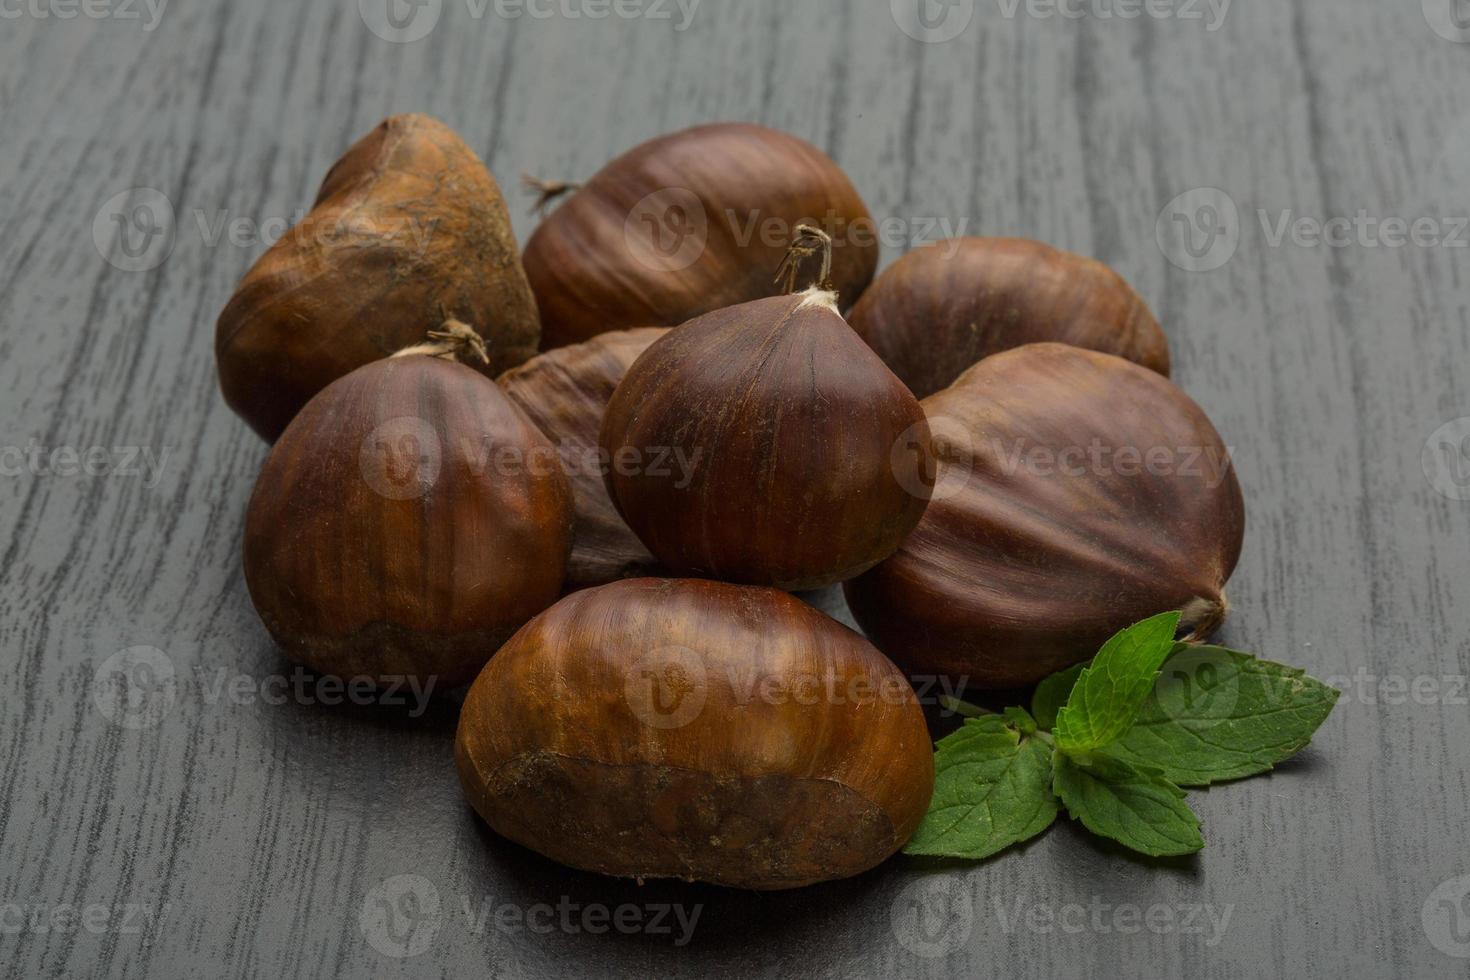 Chestnut on wooden background photo